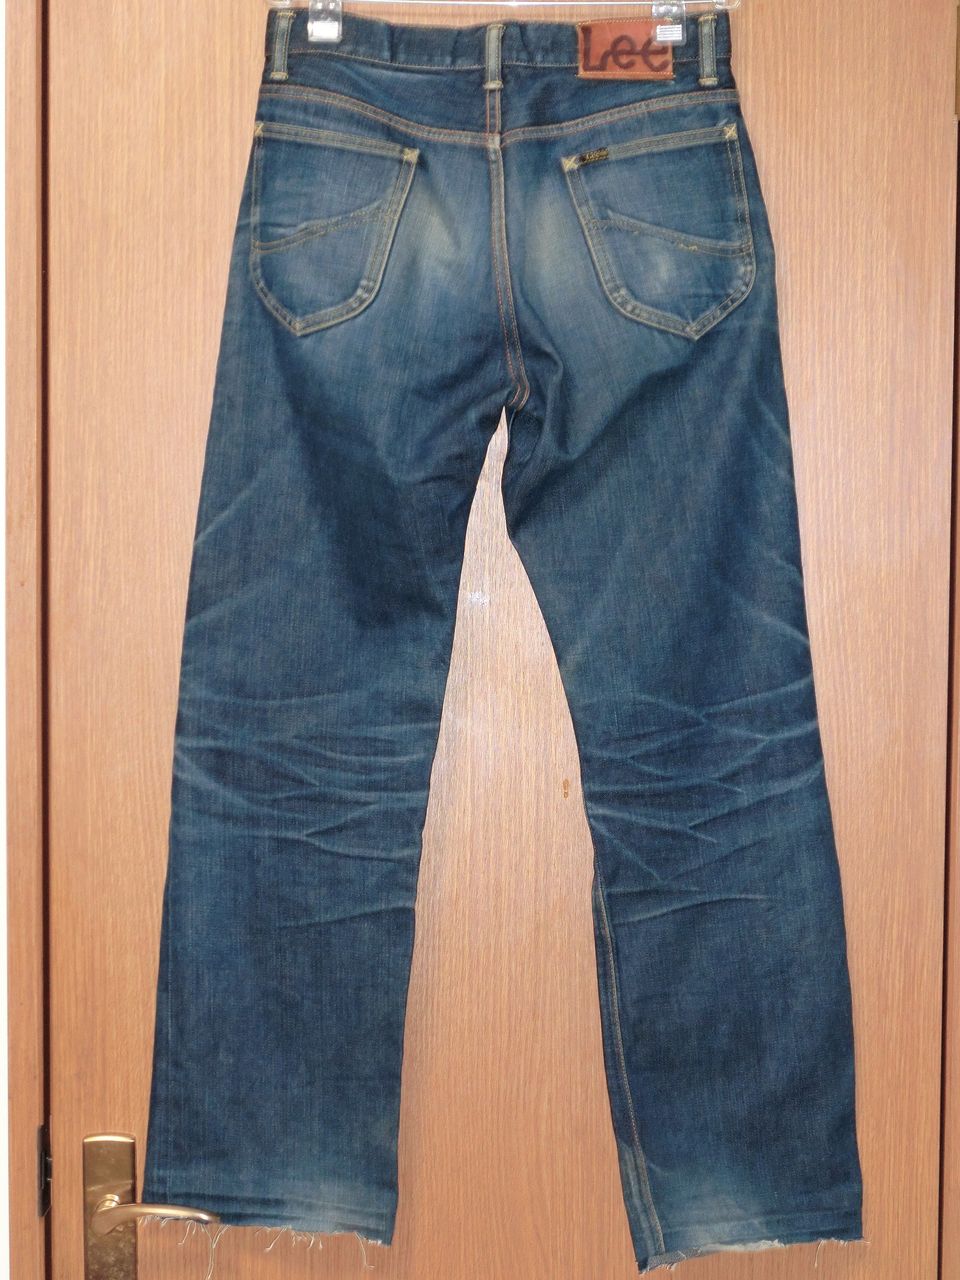 lee 101b jeans